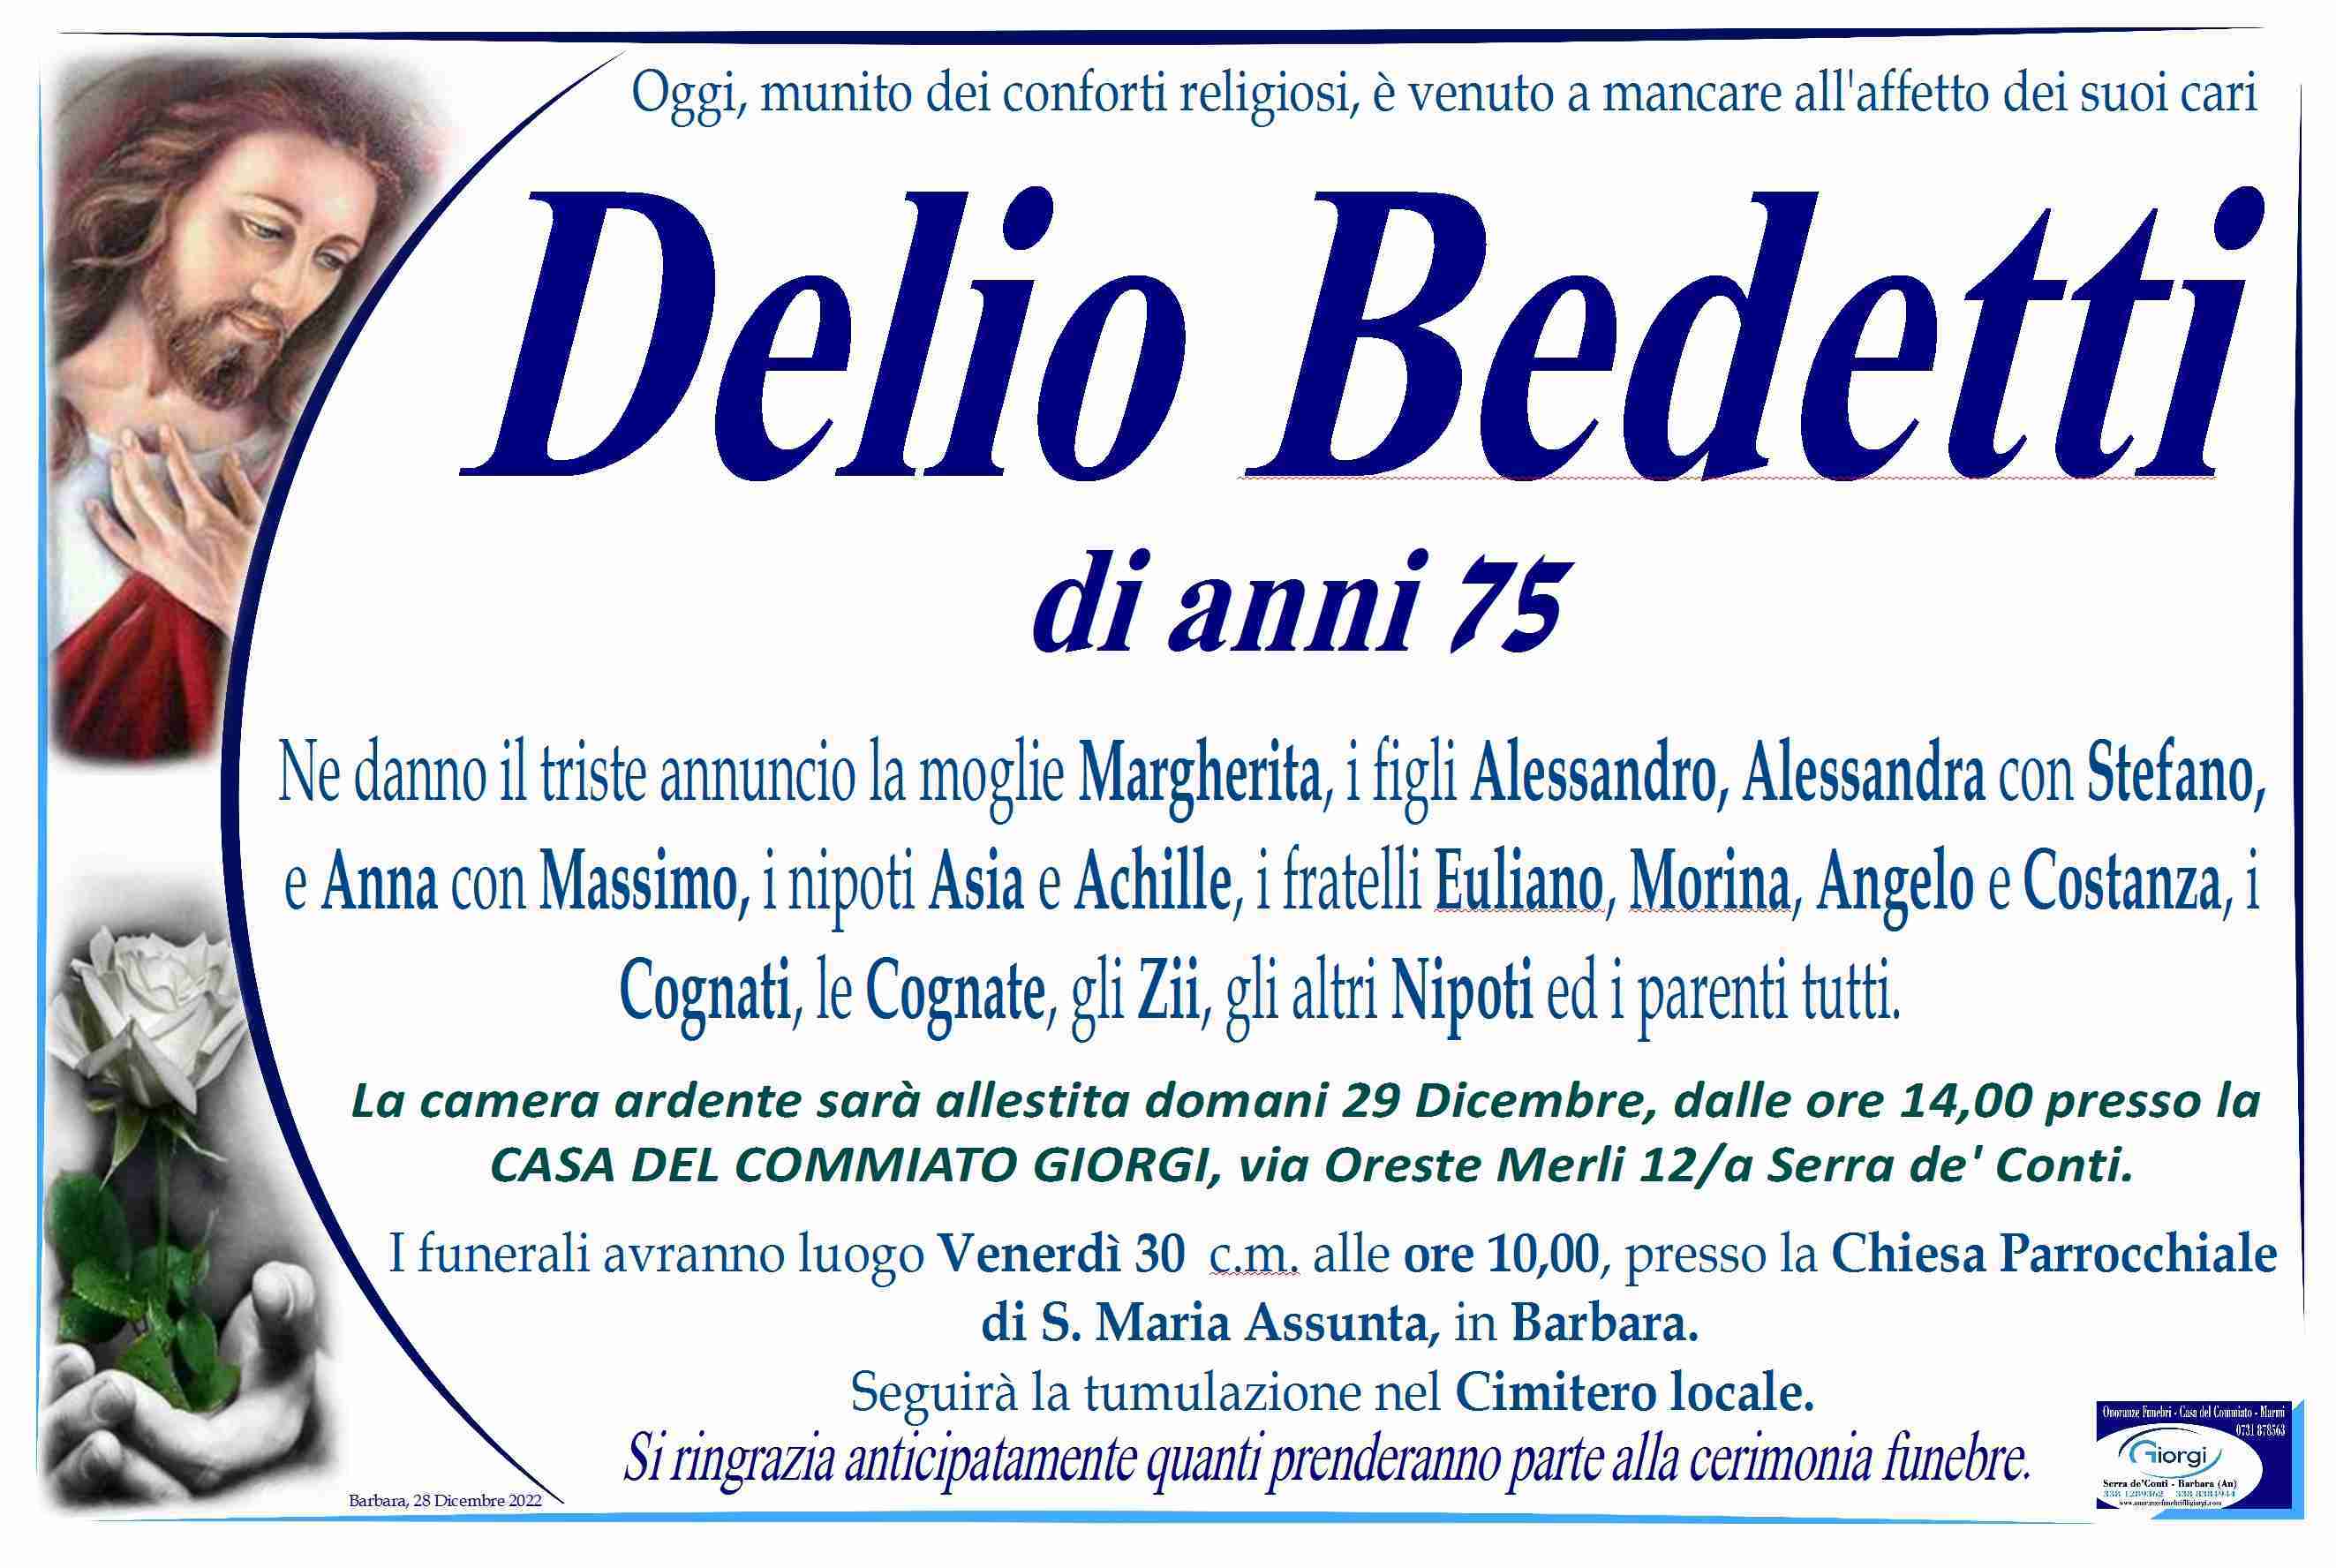 Delio Bedetti